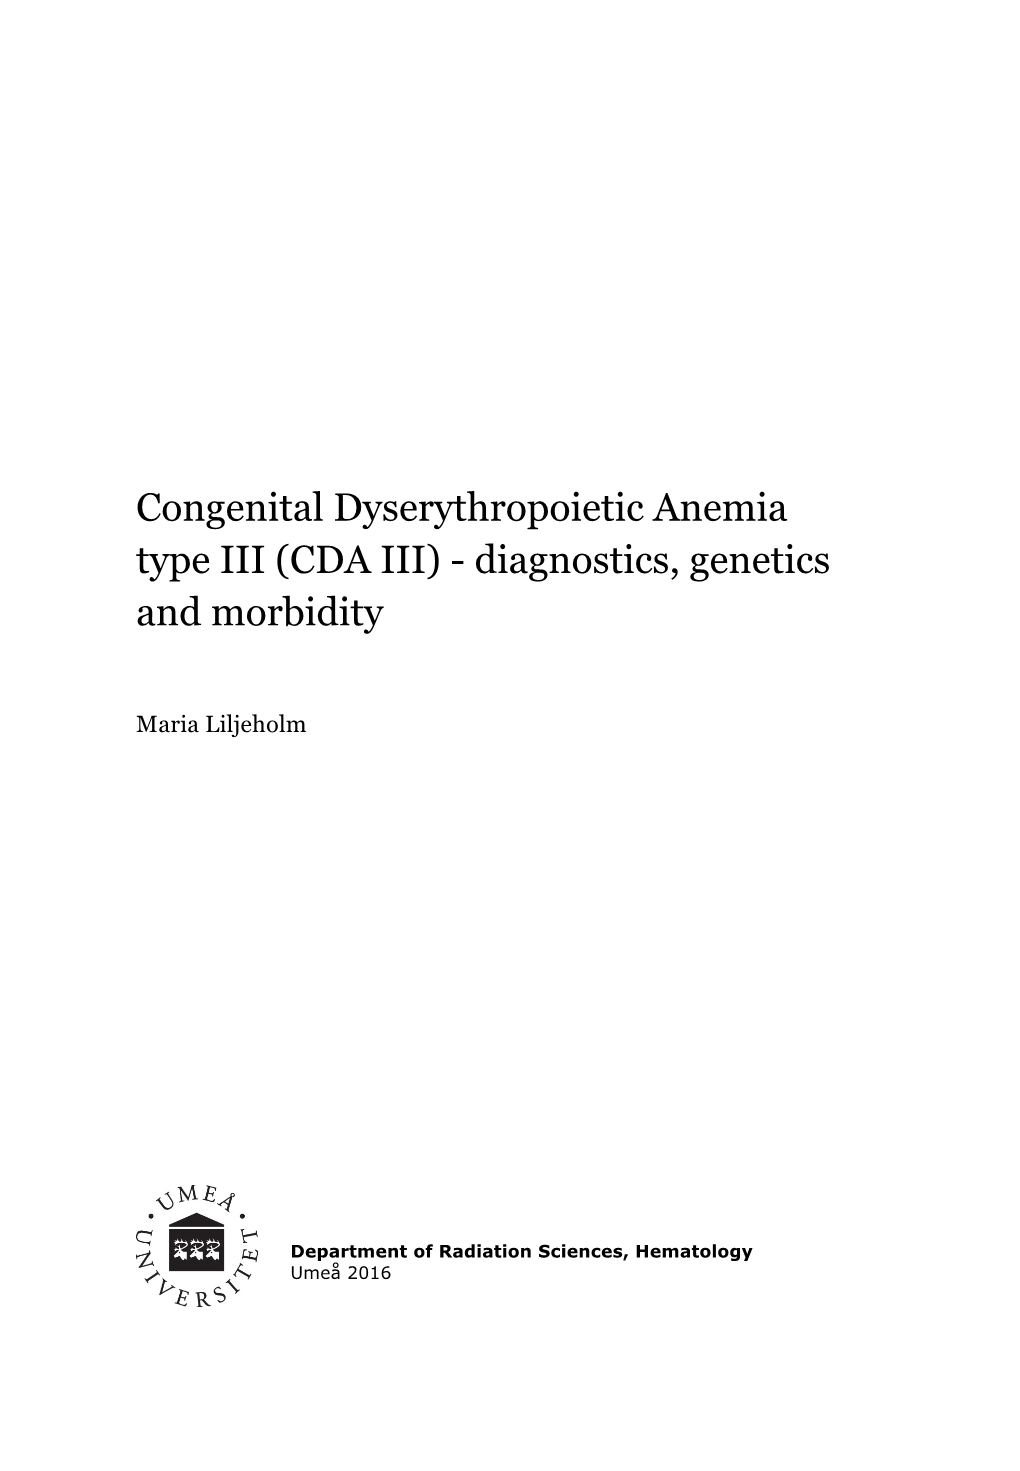 Congenital Dyserythropoietic Anemia Type III (CDA III) - Diagnostics, Genetics and Morbidity